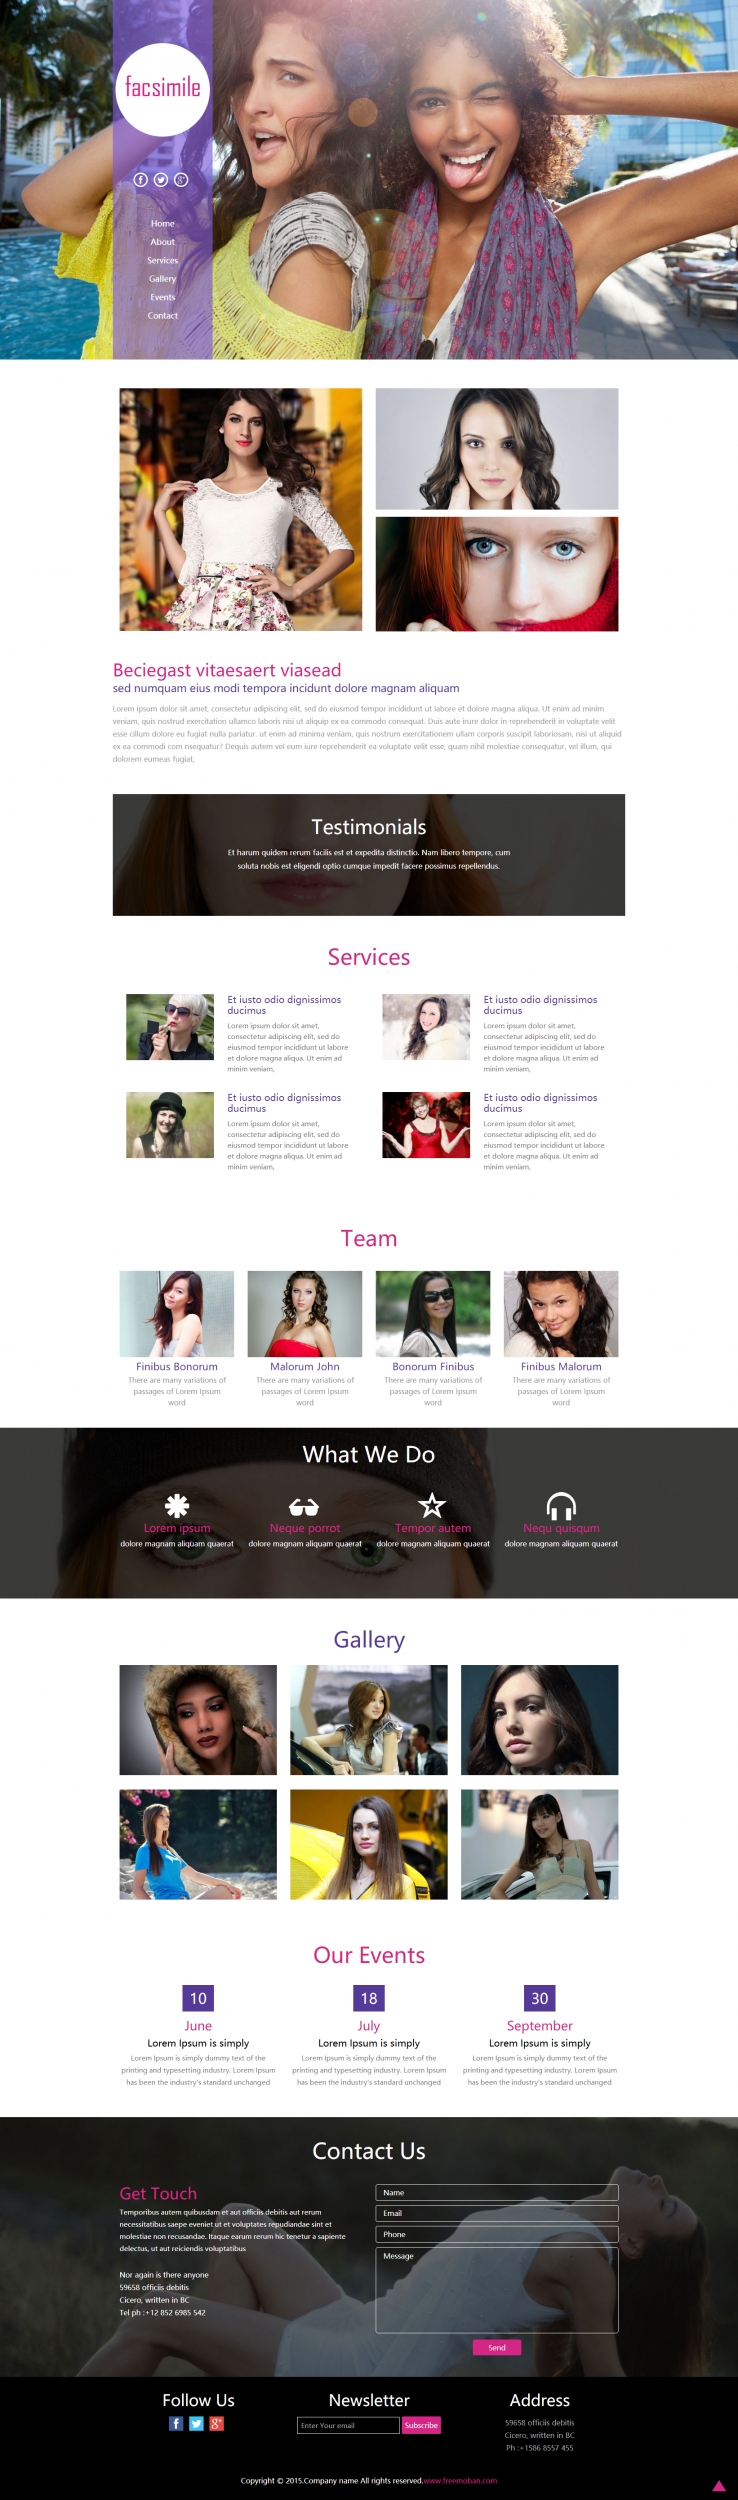 紫色大气风格的时尚模特造型网站模板下载